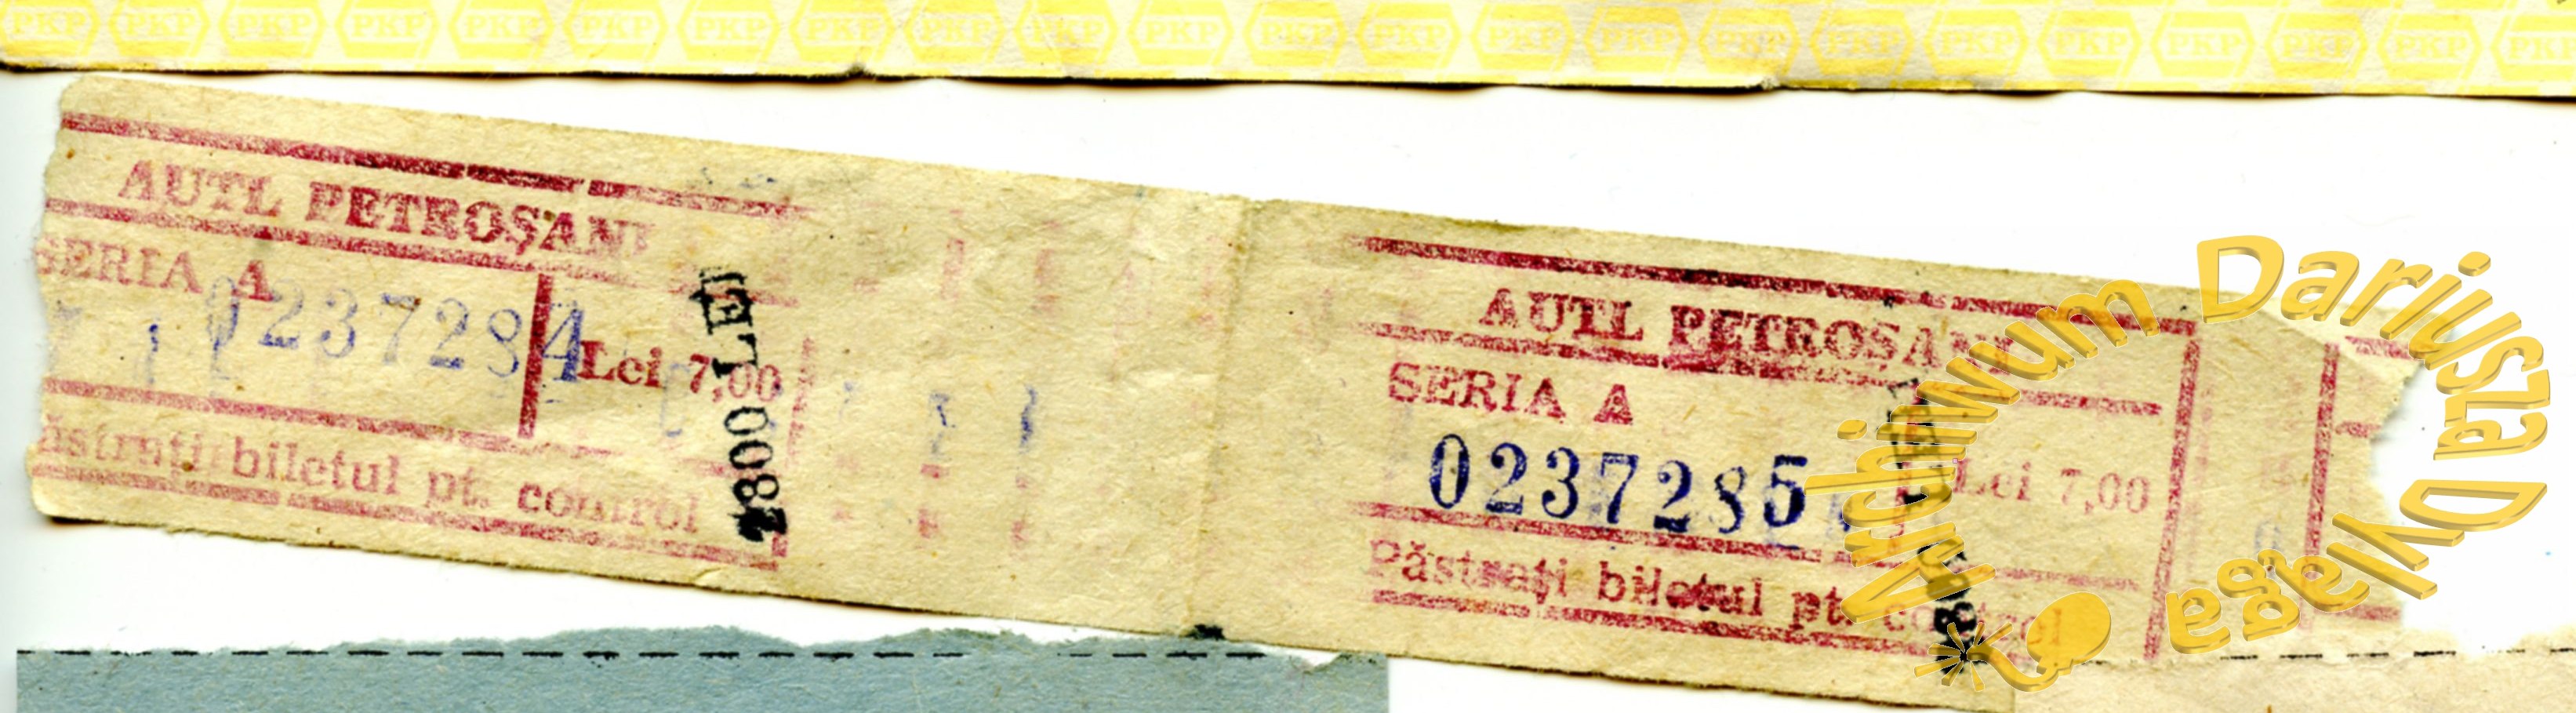 1998-bilet-petrosani